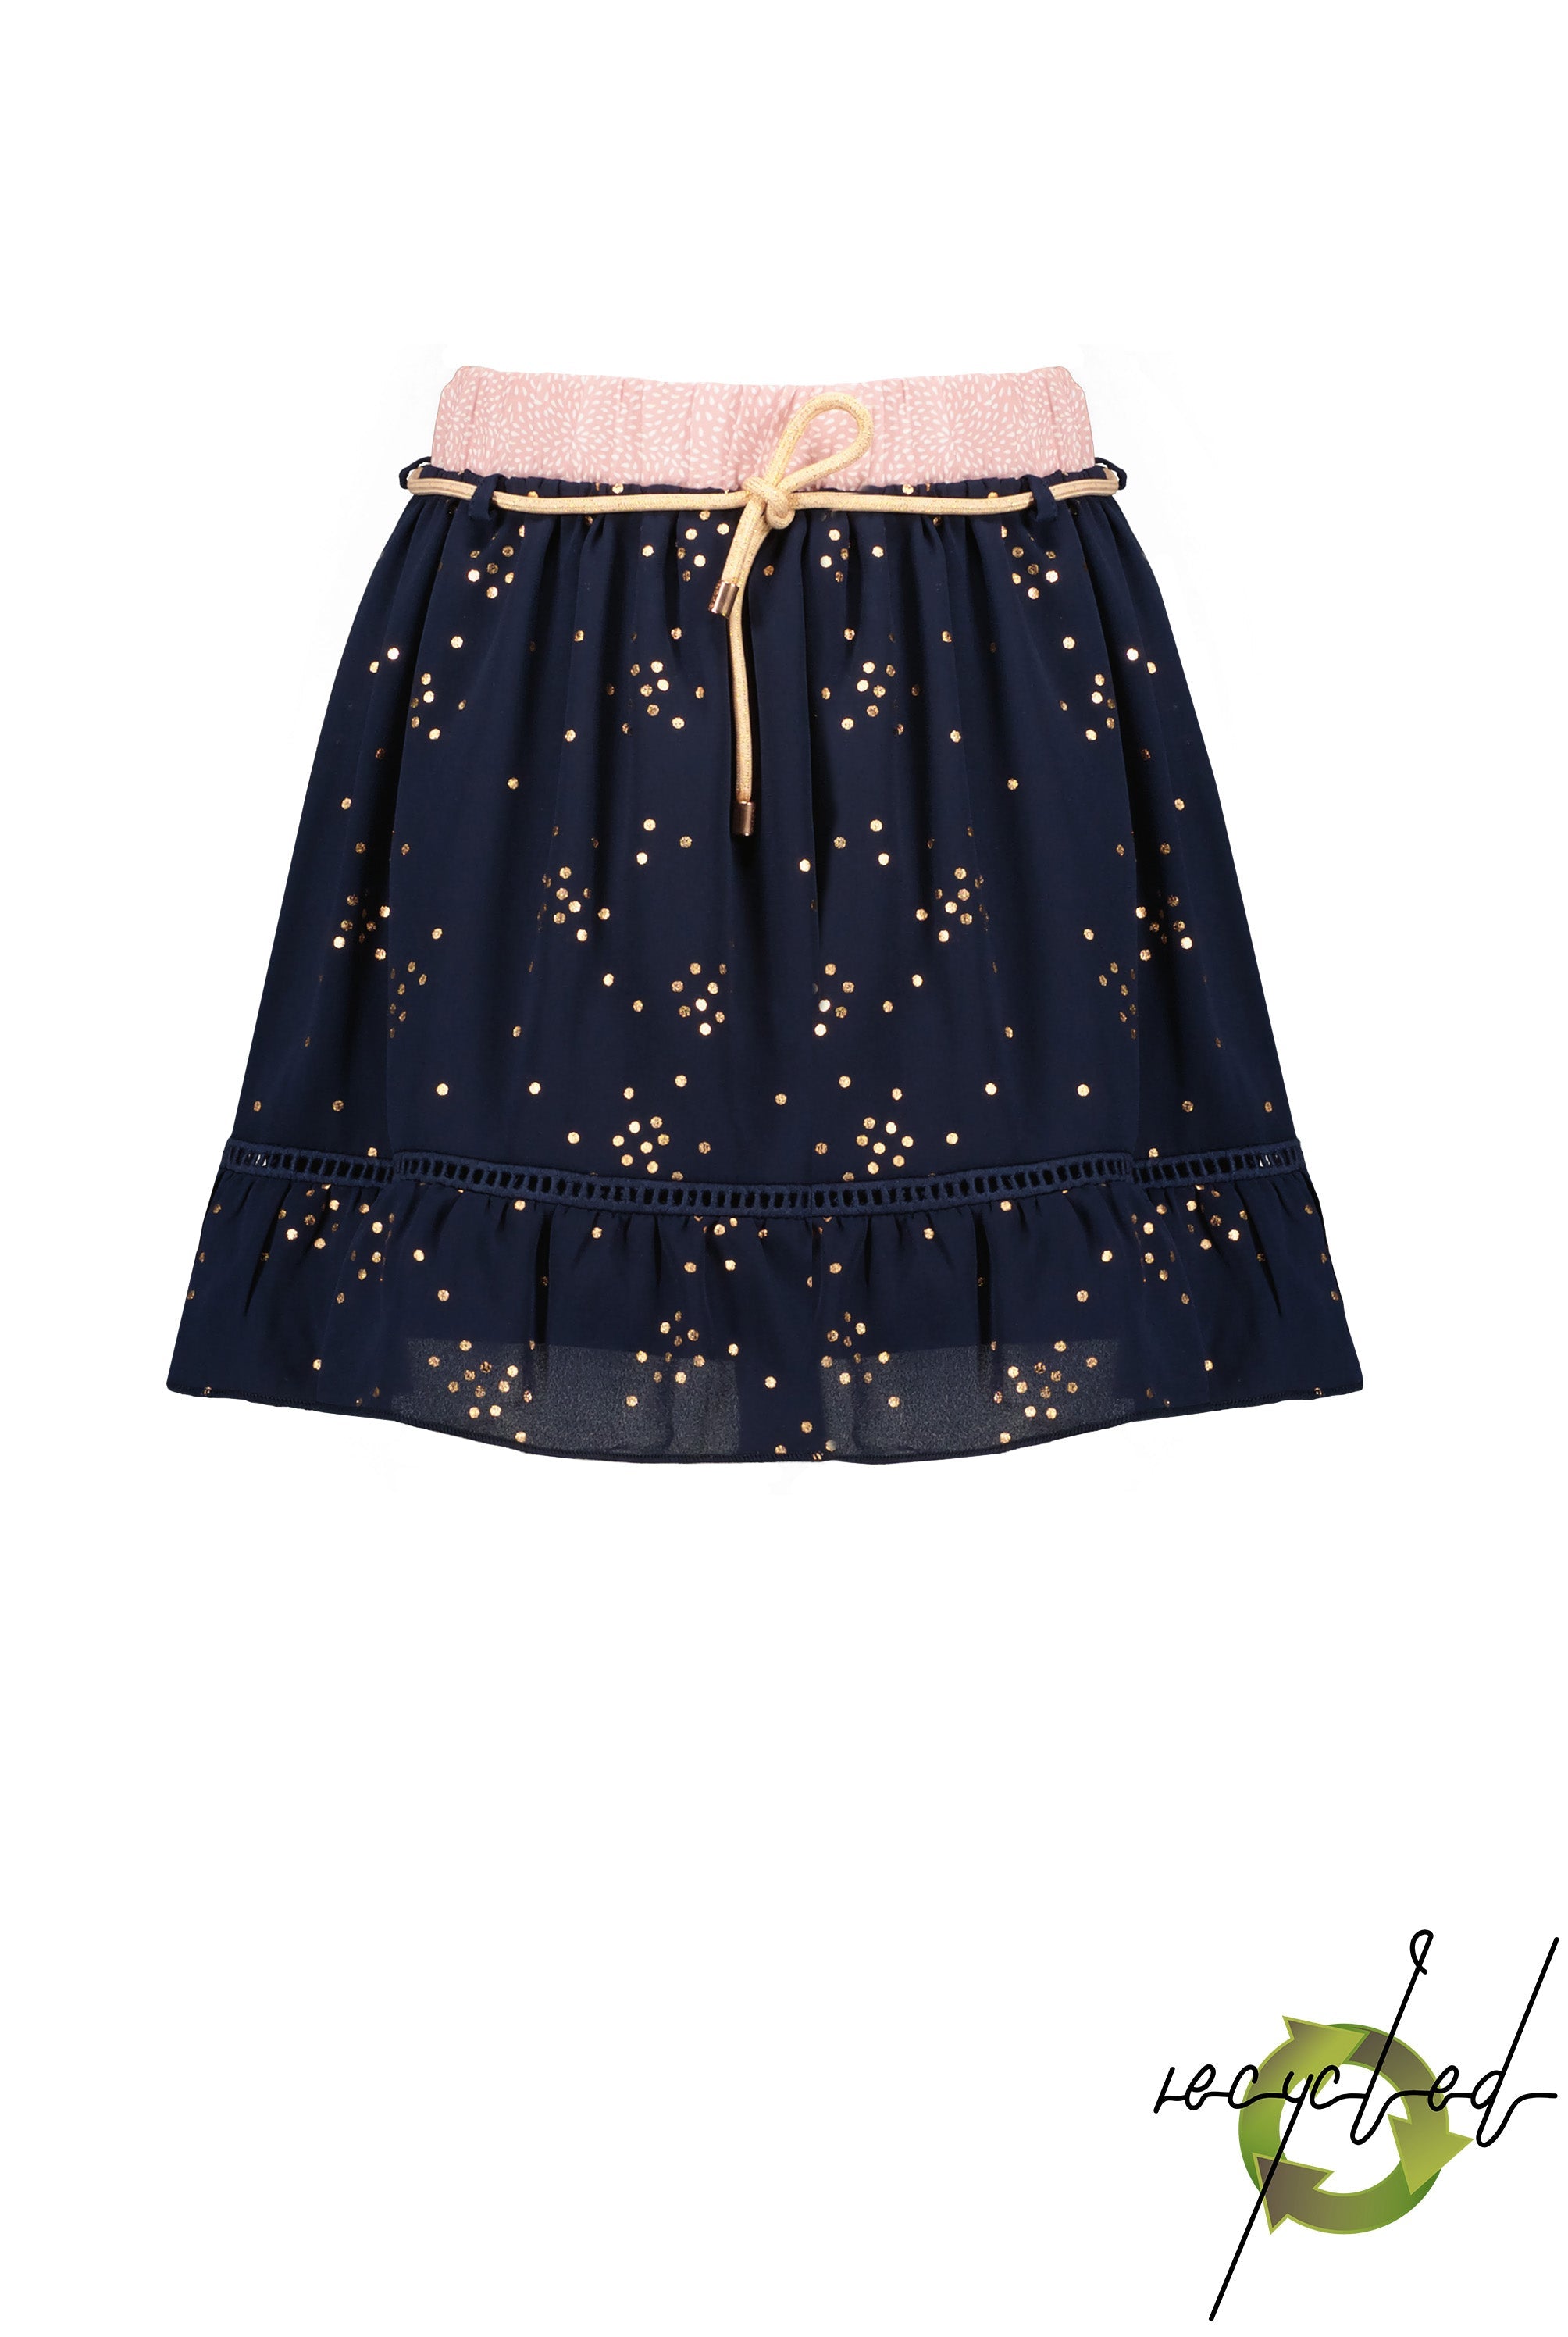 Meisjes Nona short skirt with foil AOP van NoNo in de kleur Navy Blazer in maat 146/152.